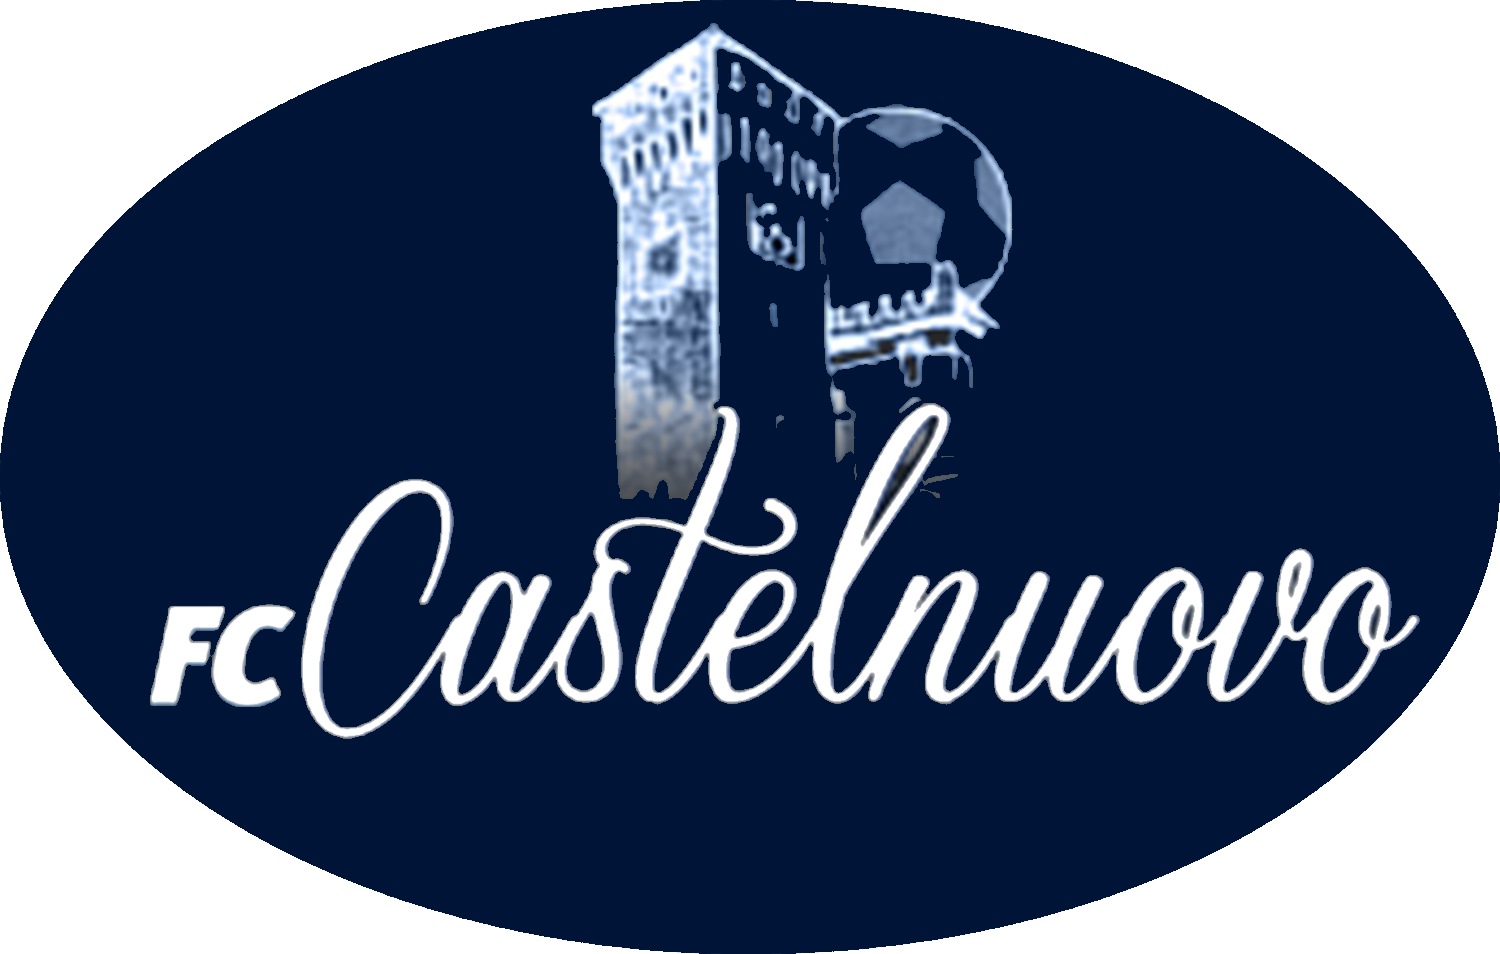 FC CASTELNUOVO v VIGNOLESE 1907